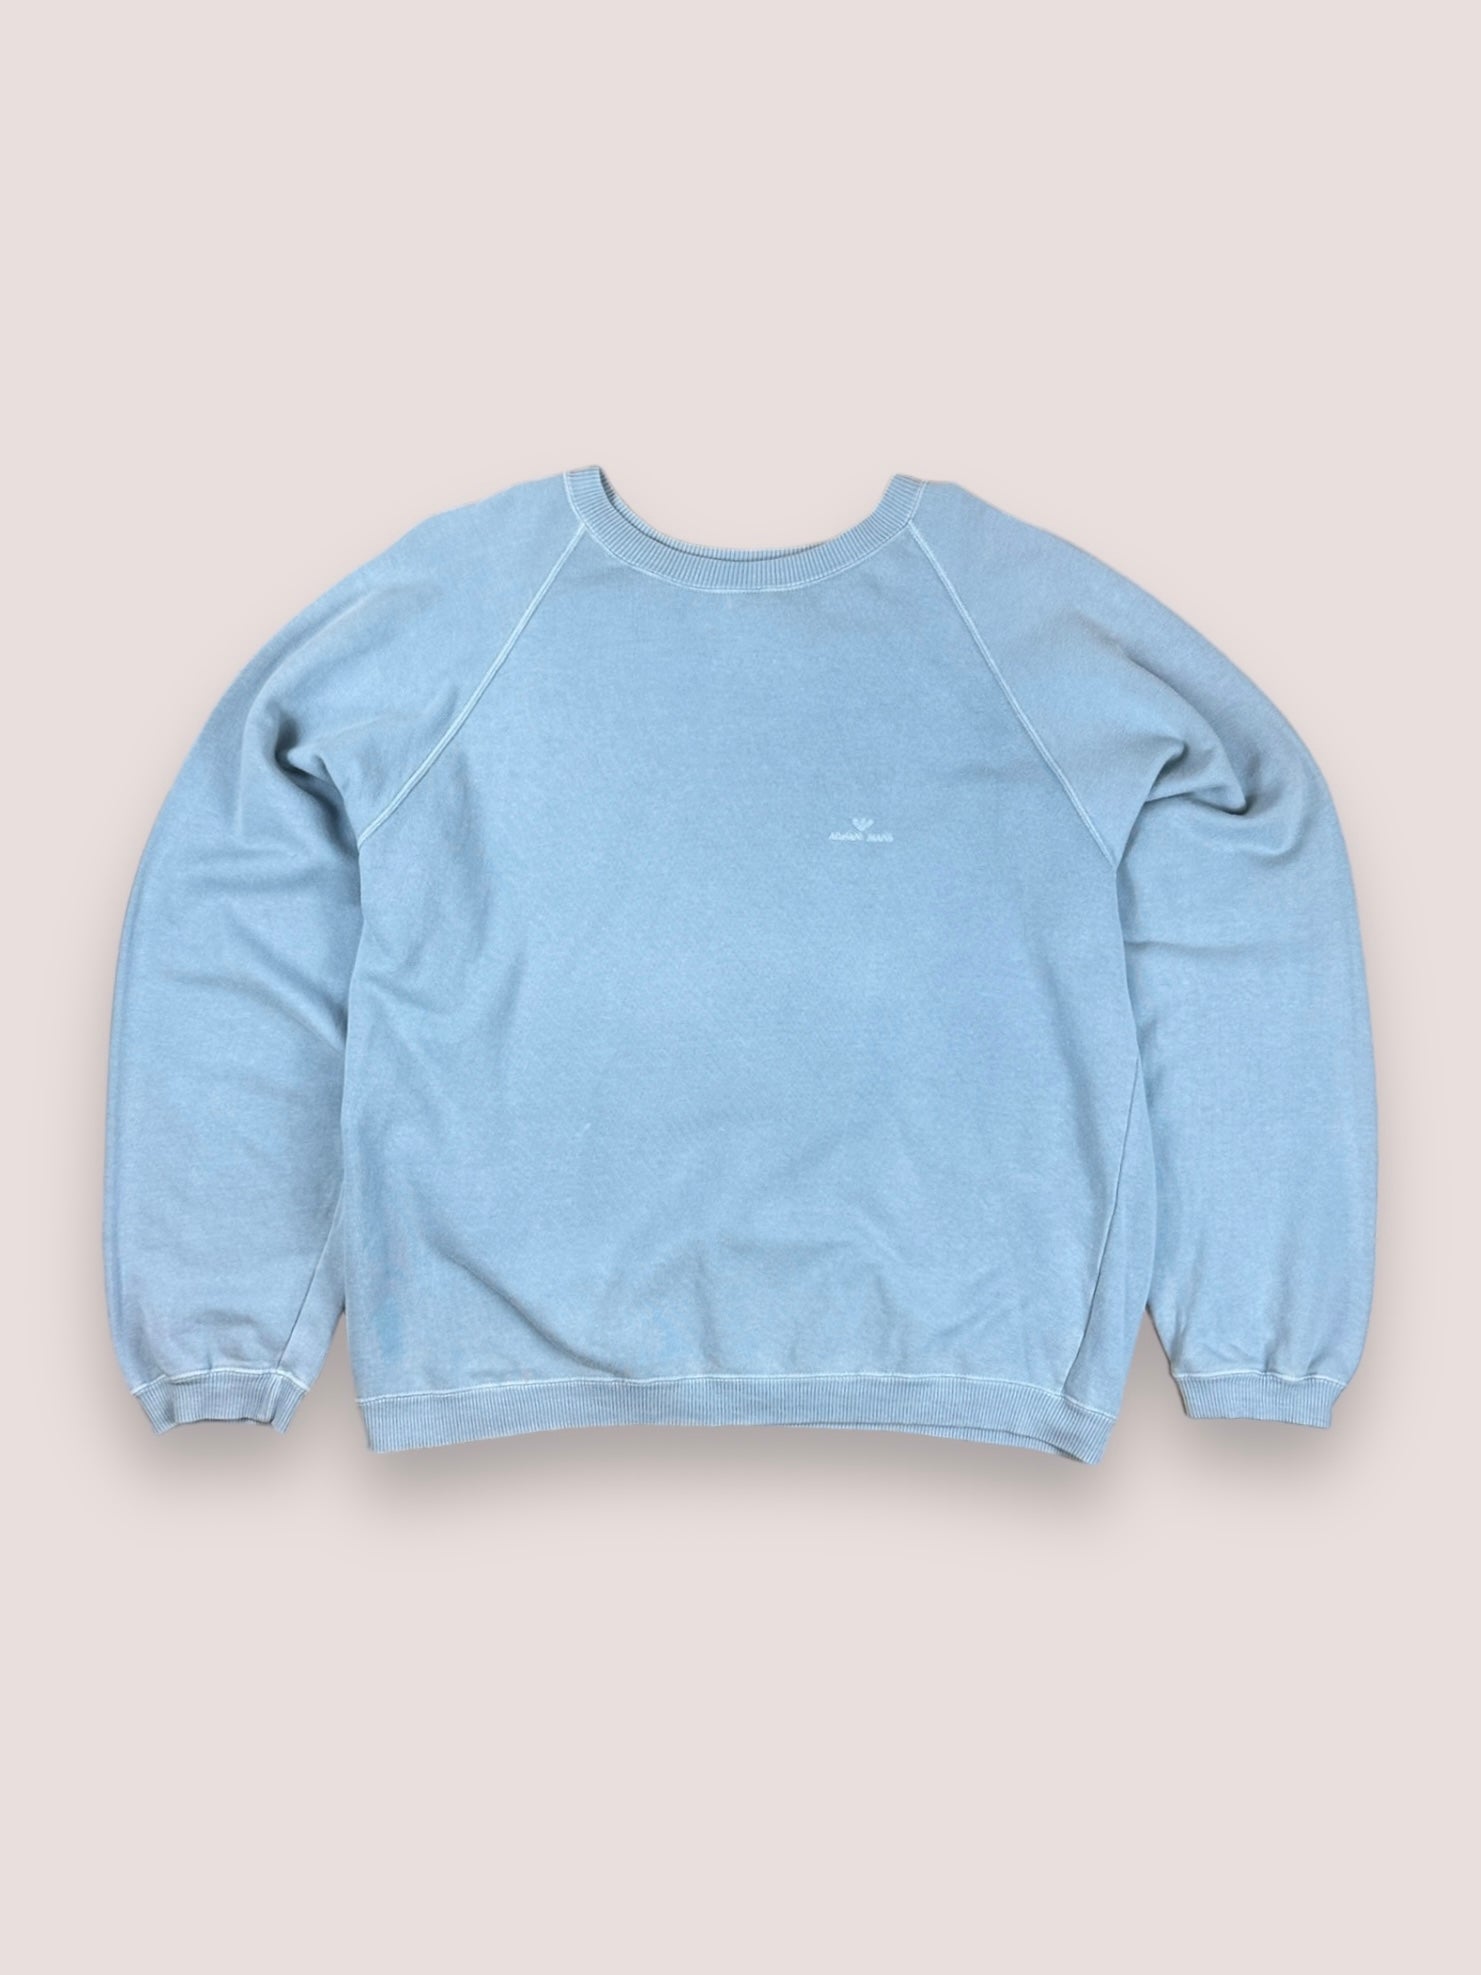 Vintage armani blue sweatshirt